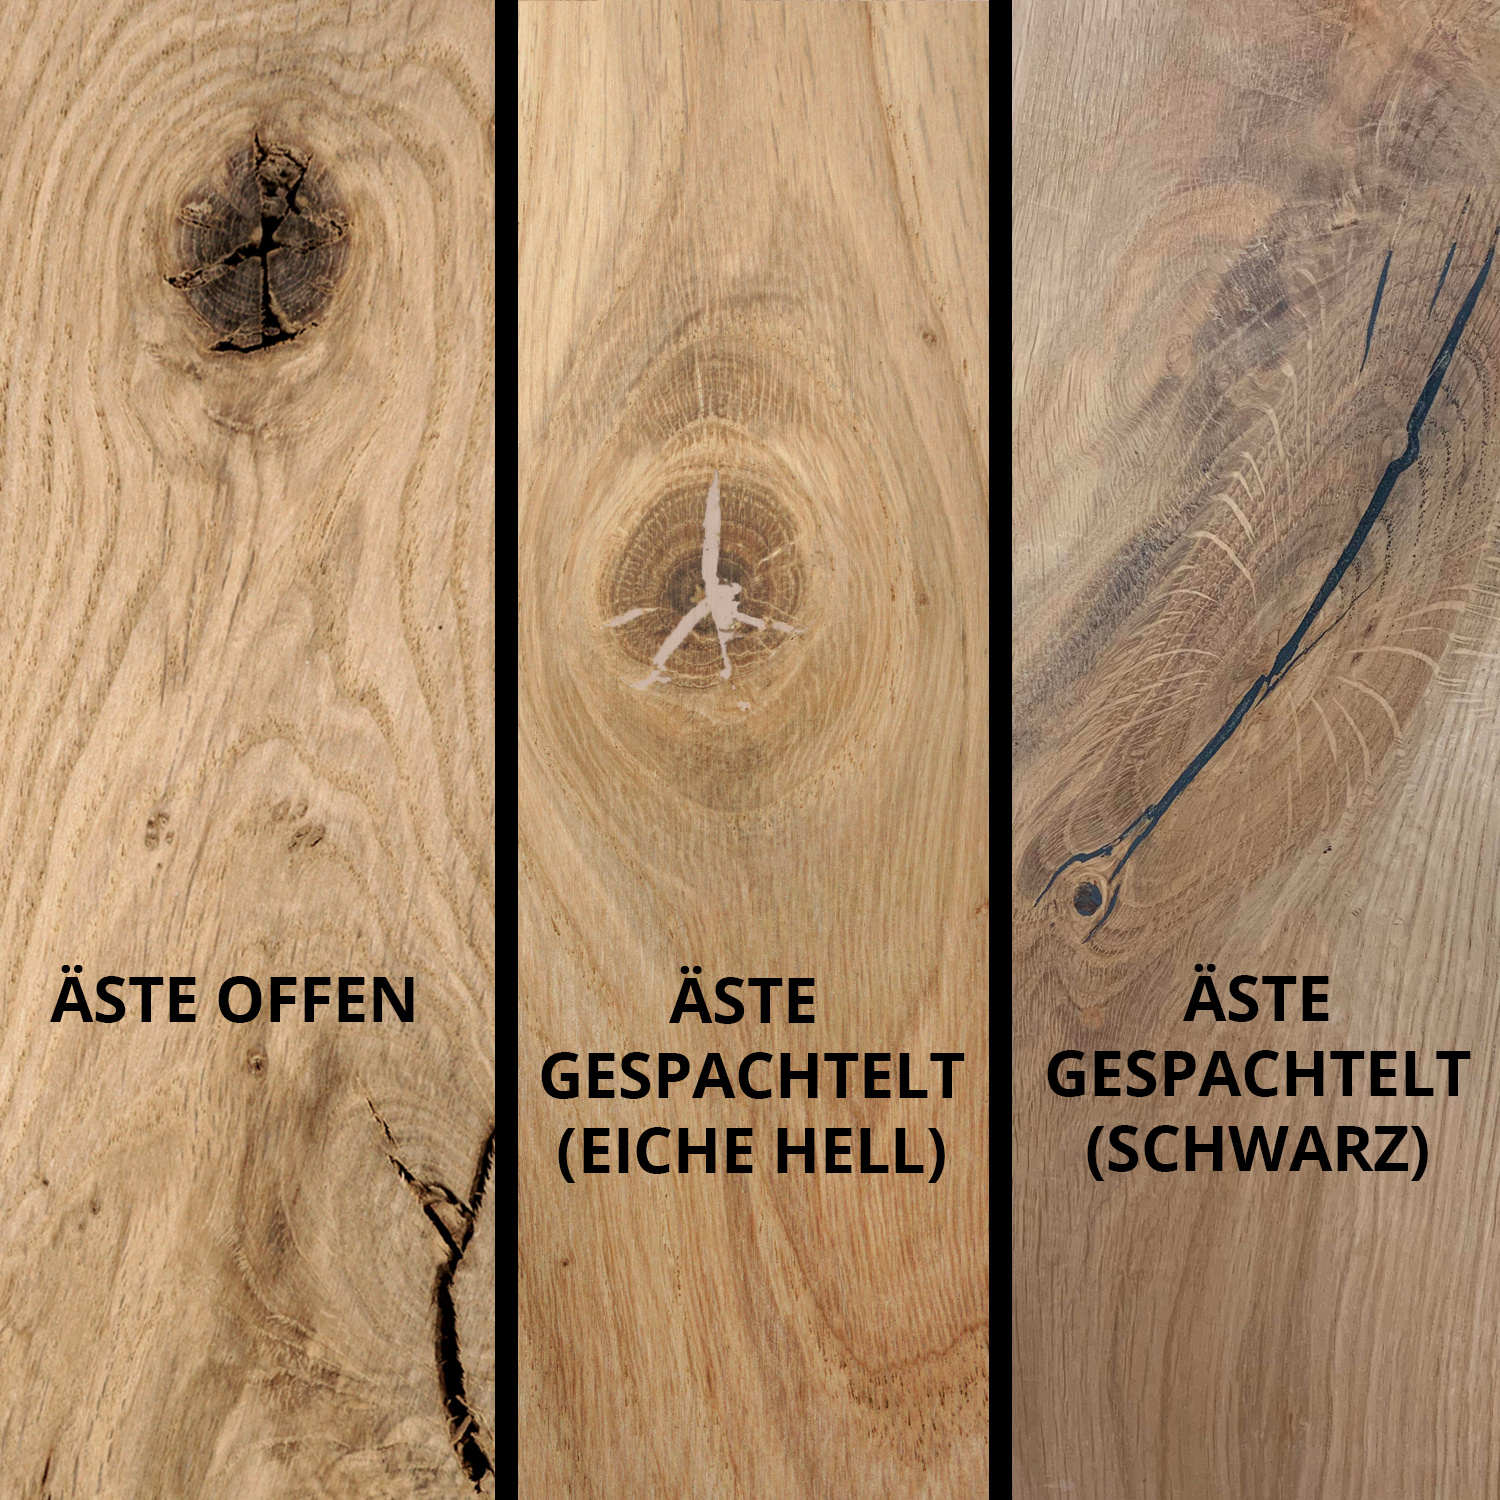  Tischplatte Eiche rund nach Maß - 2,5 cm dick - Eichenholz rustikal - Durchmesser: 30 - 180 cm - Eiche Tischplatte rund massiv - verleimt & künstlich getrocknet (HF 8-12%)